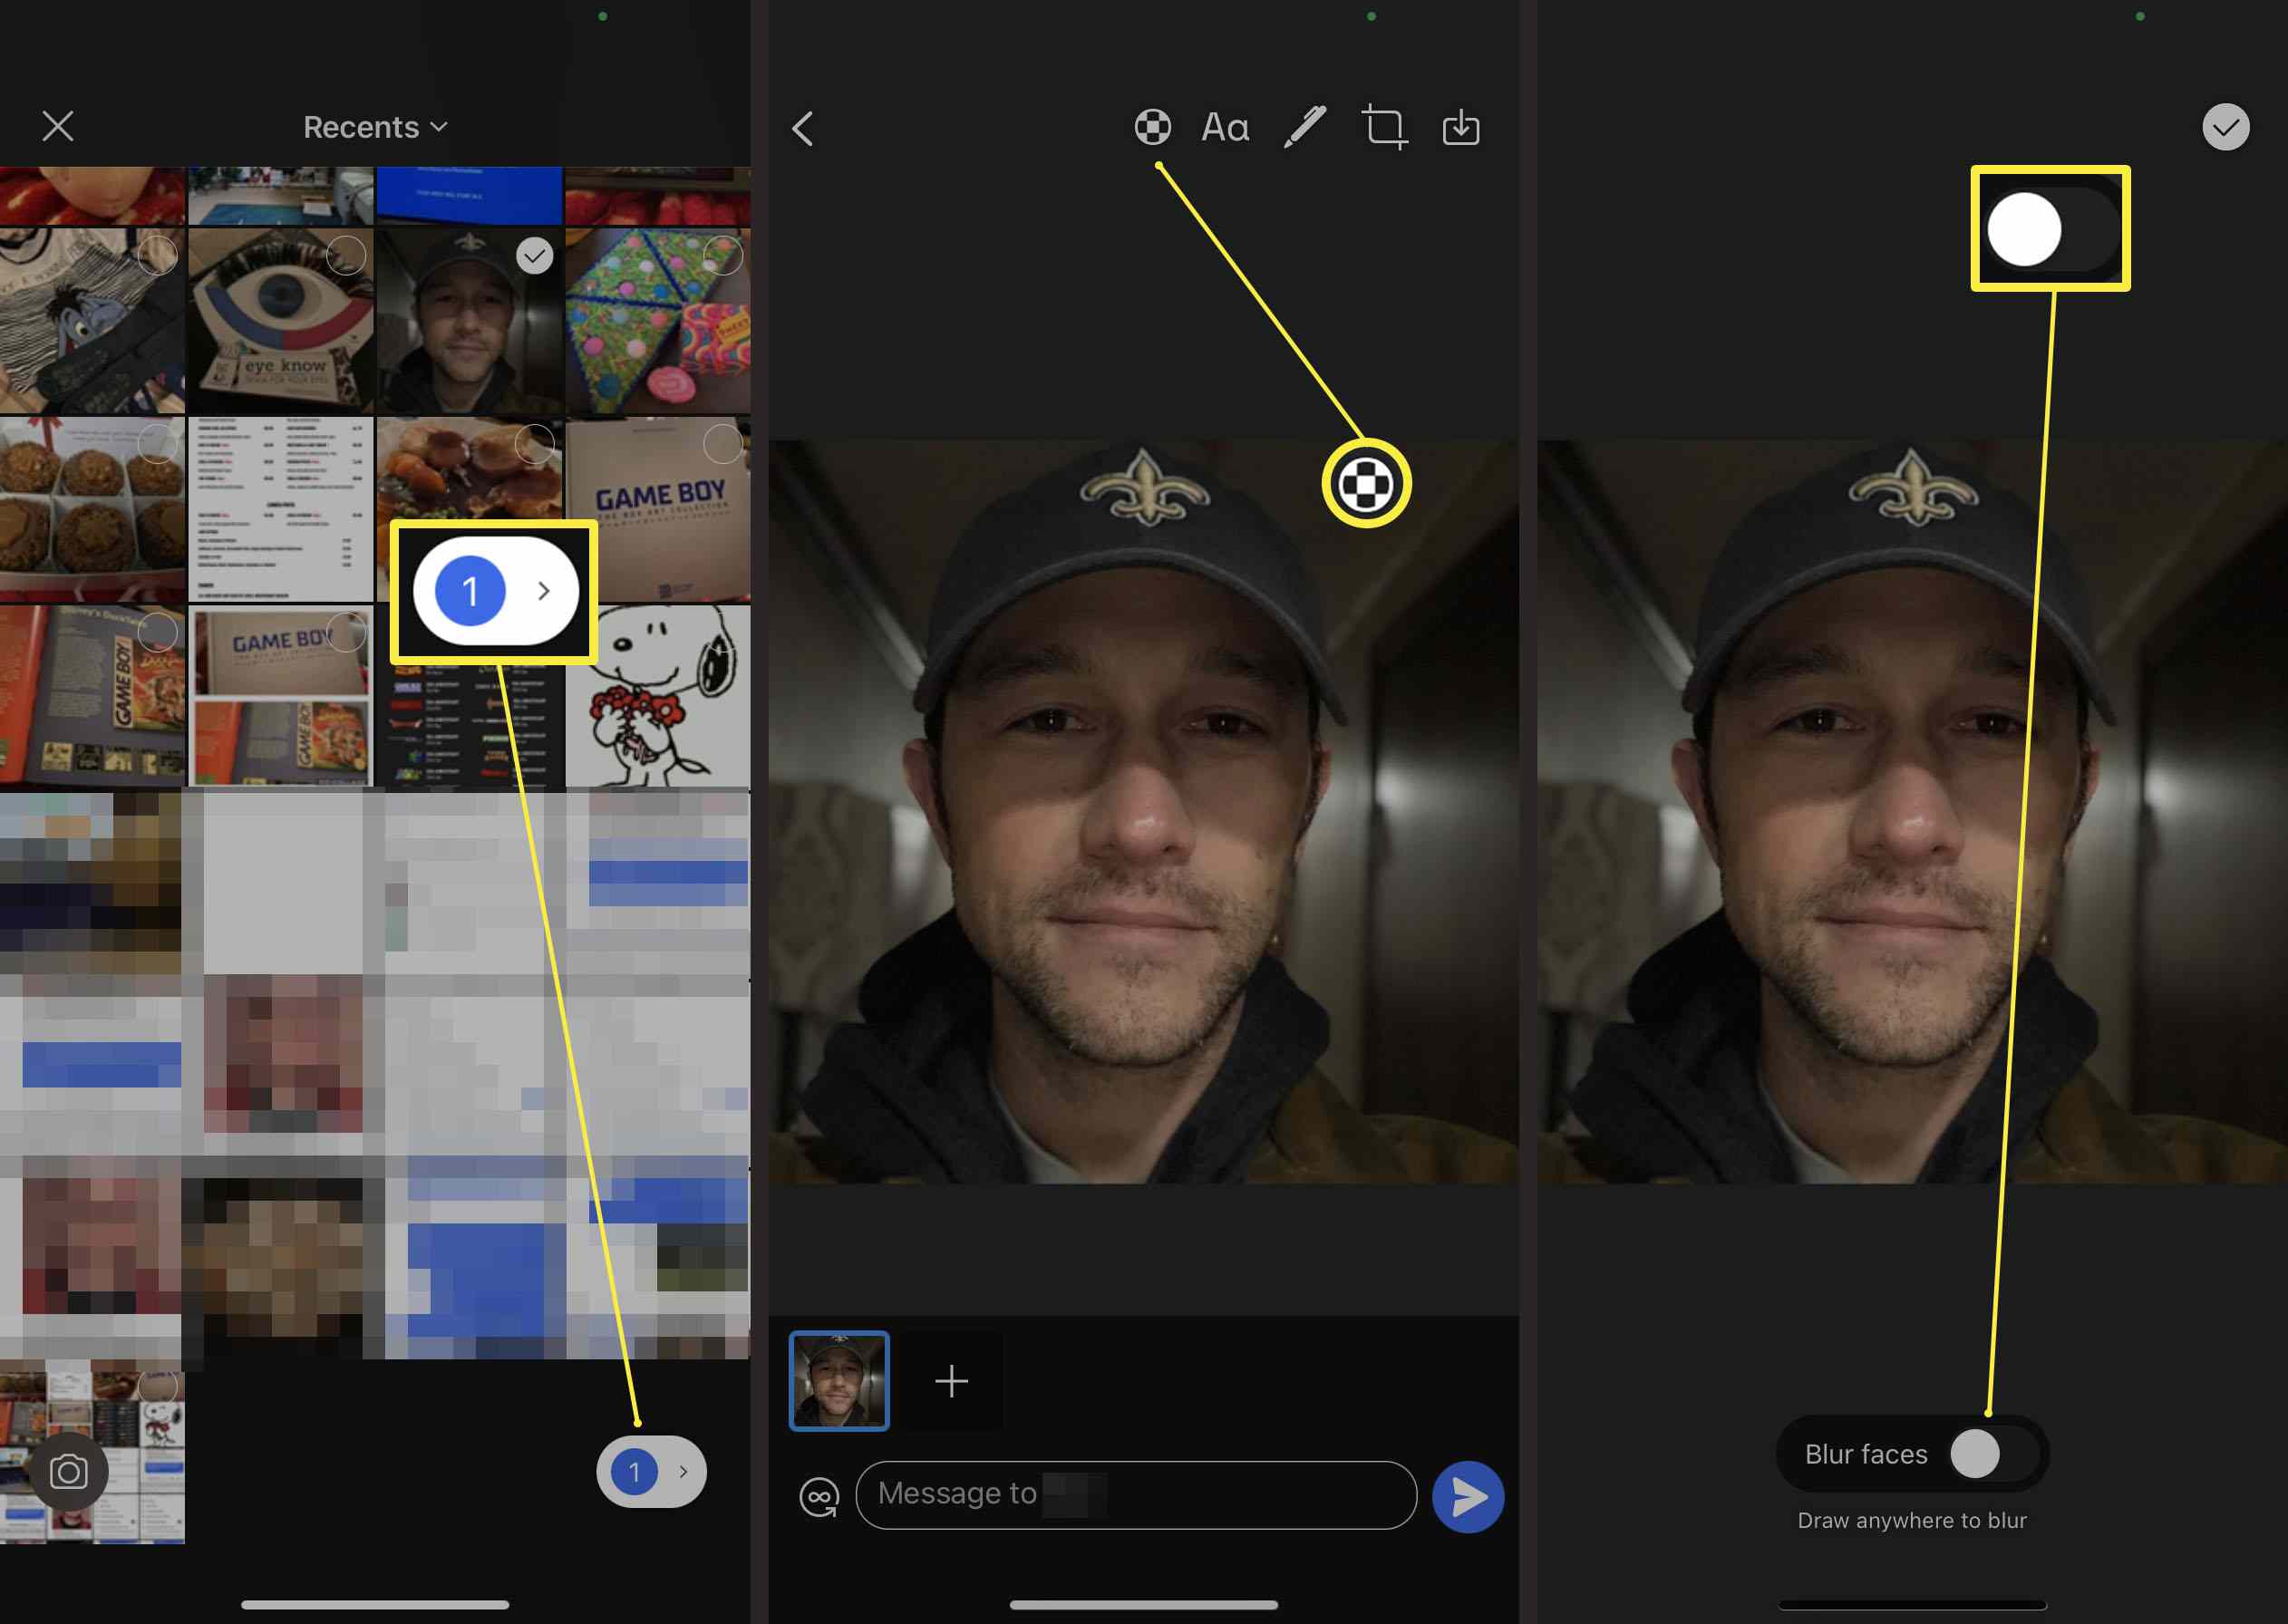 Kroky vyžadované v aplikaci Signal k automatickému rozmazání něčí tváře na fotografii